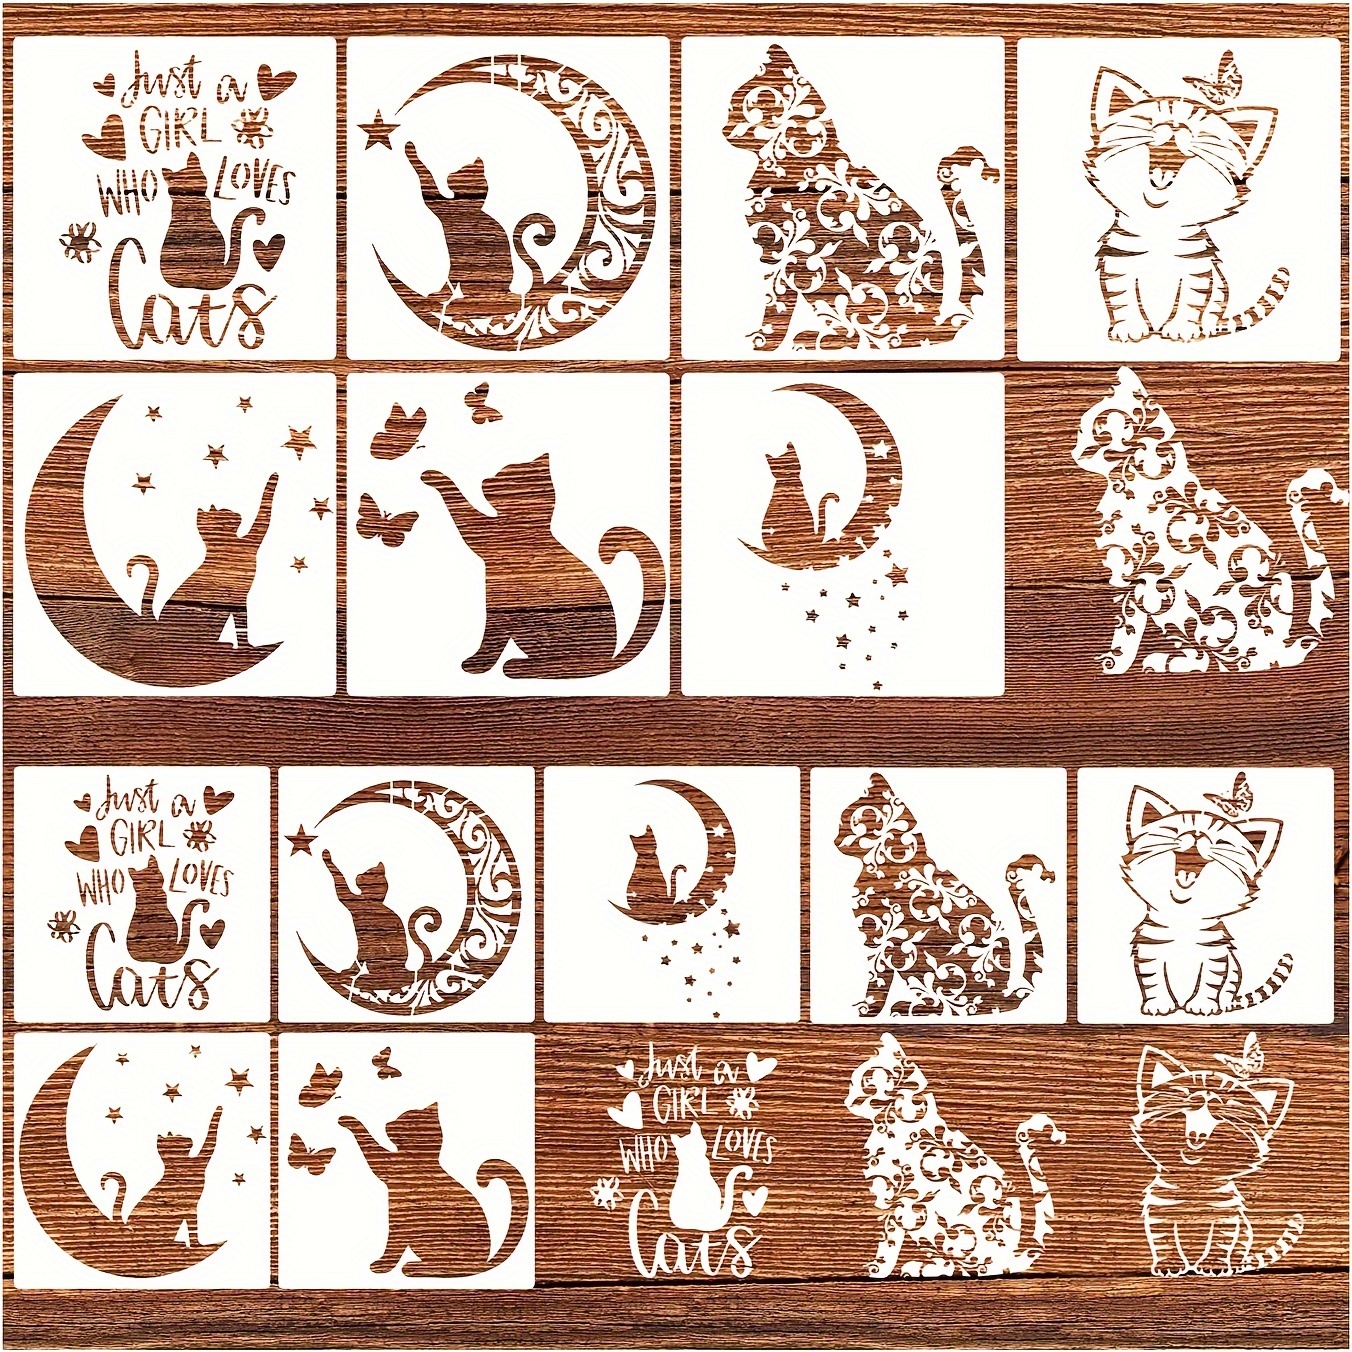 Cat Stencils, Dog Stencil Patterns, Animal Stencils All Free Printable  Stencils